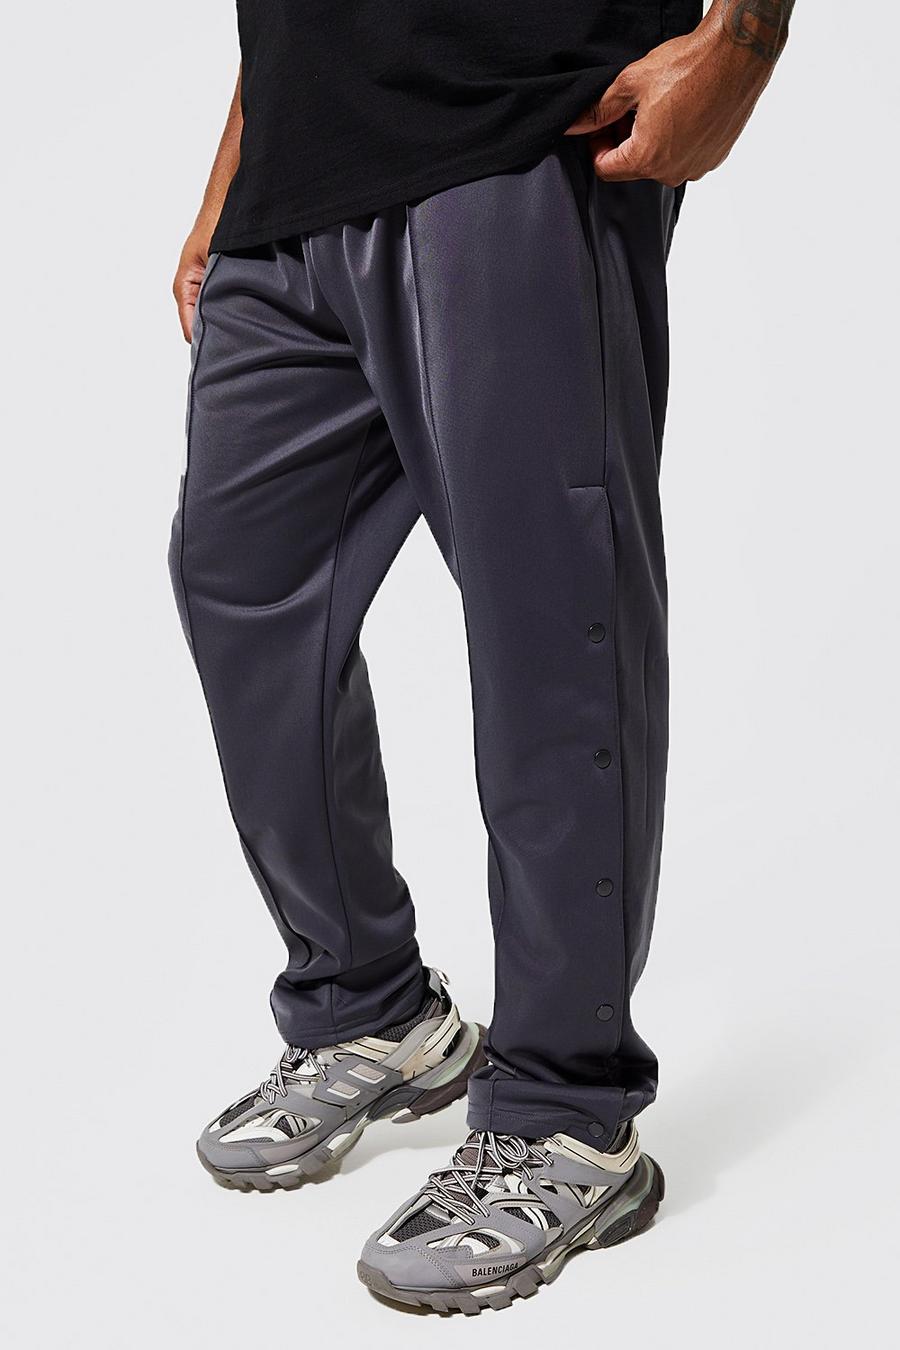 Pantaloni tuta Plus Size Regular Fit in tricot con bottoni a pressione, Charcoal grigio